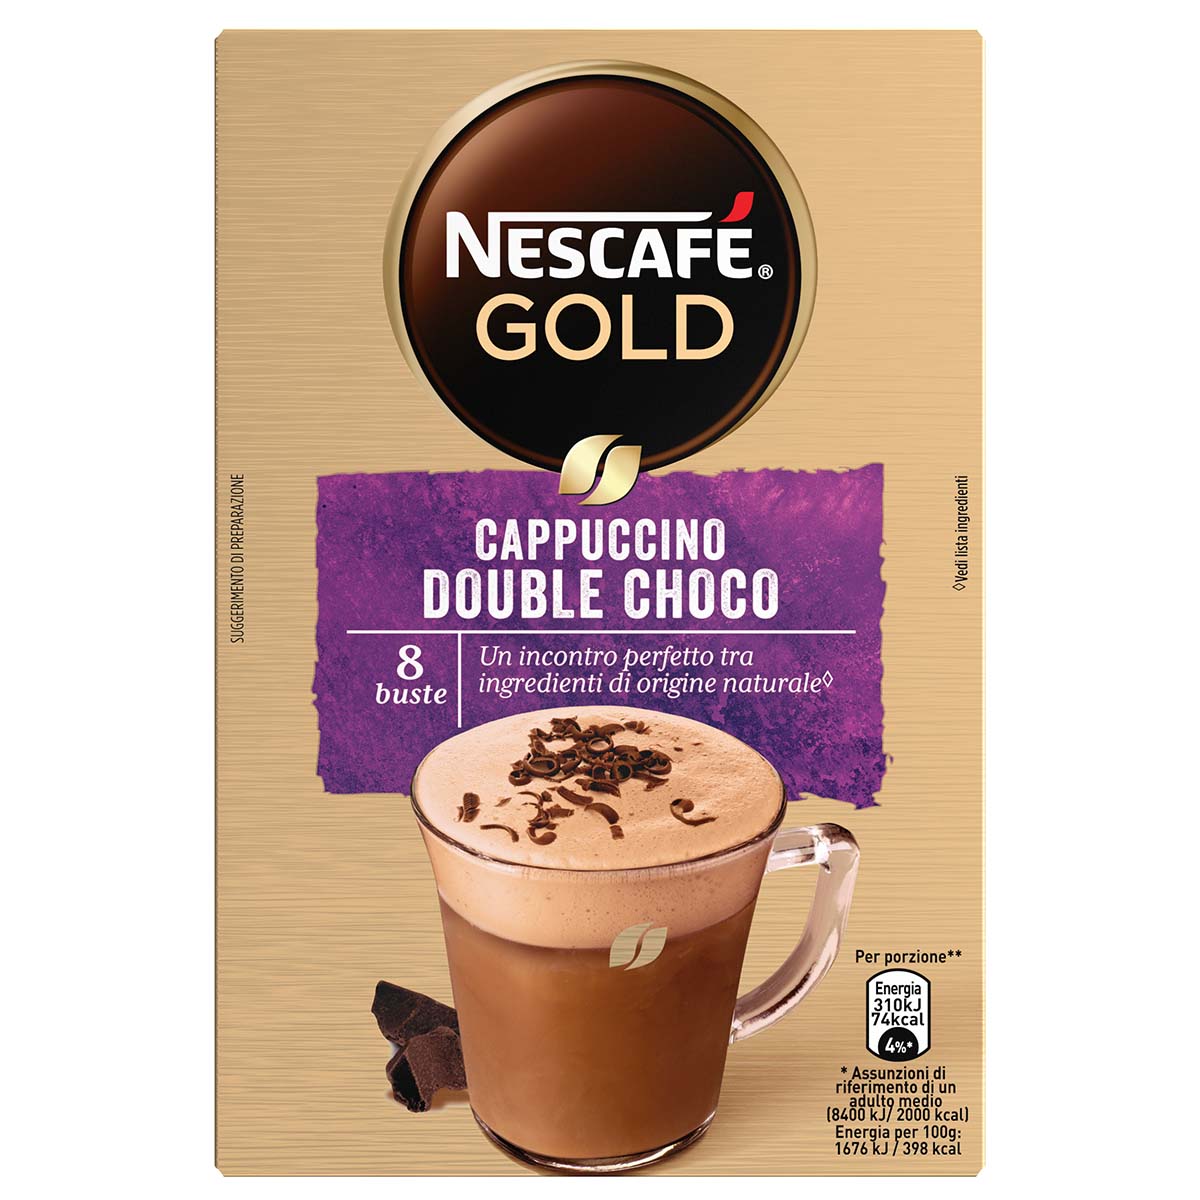 Nescafé GOLD CAPPUCCINO DOUBLE CHOCO Preparato Solubile Per Cappuccino Al Doppio Cioccolato Astuccio 8 Bustine 148 g